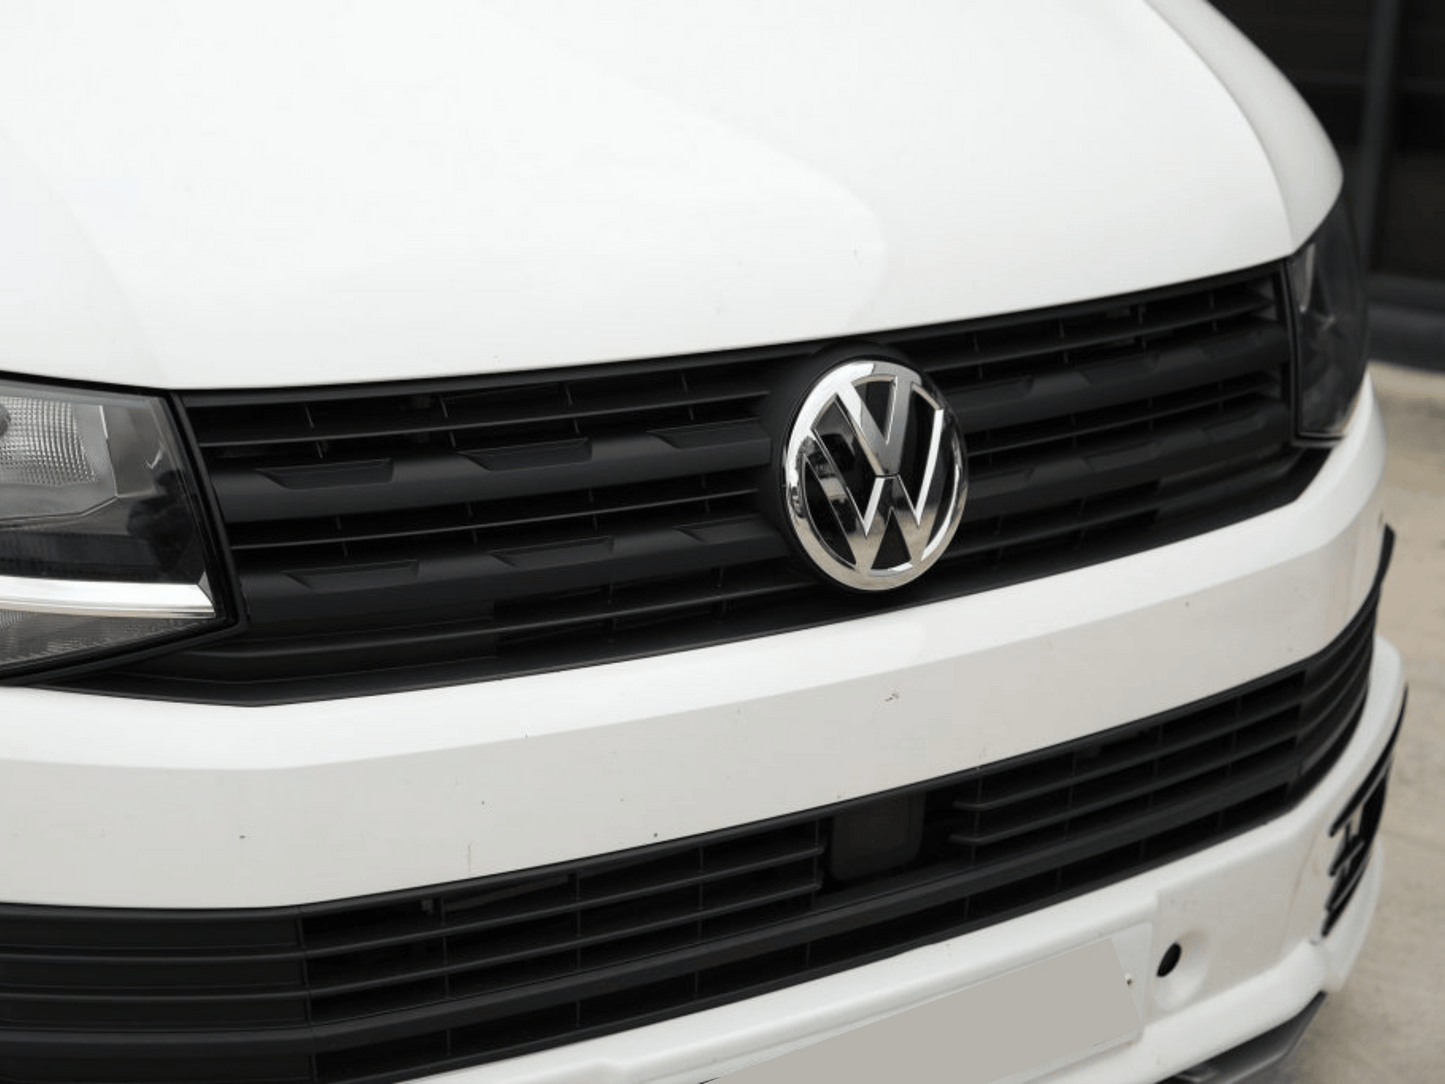 Finiture della griglia anteriore VW Transporter T6 R-Line - Nero lucido